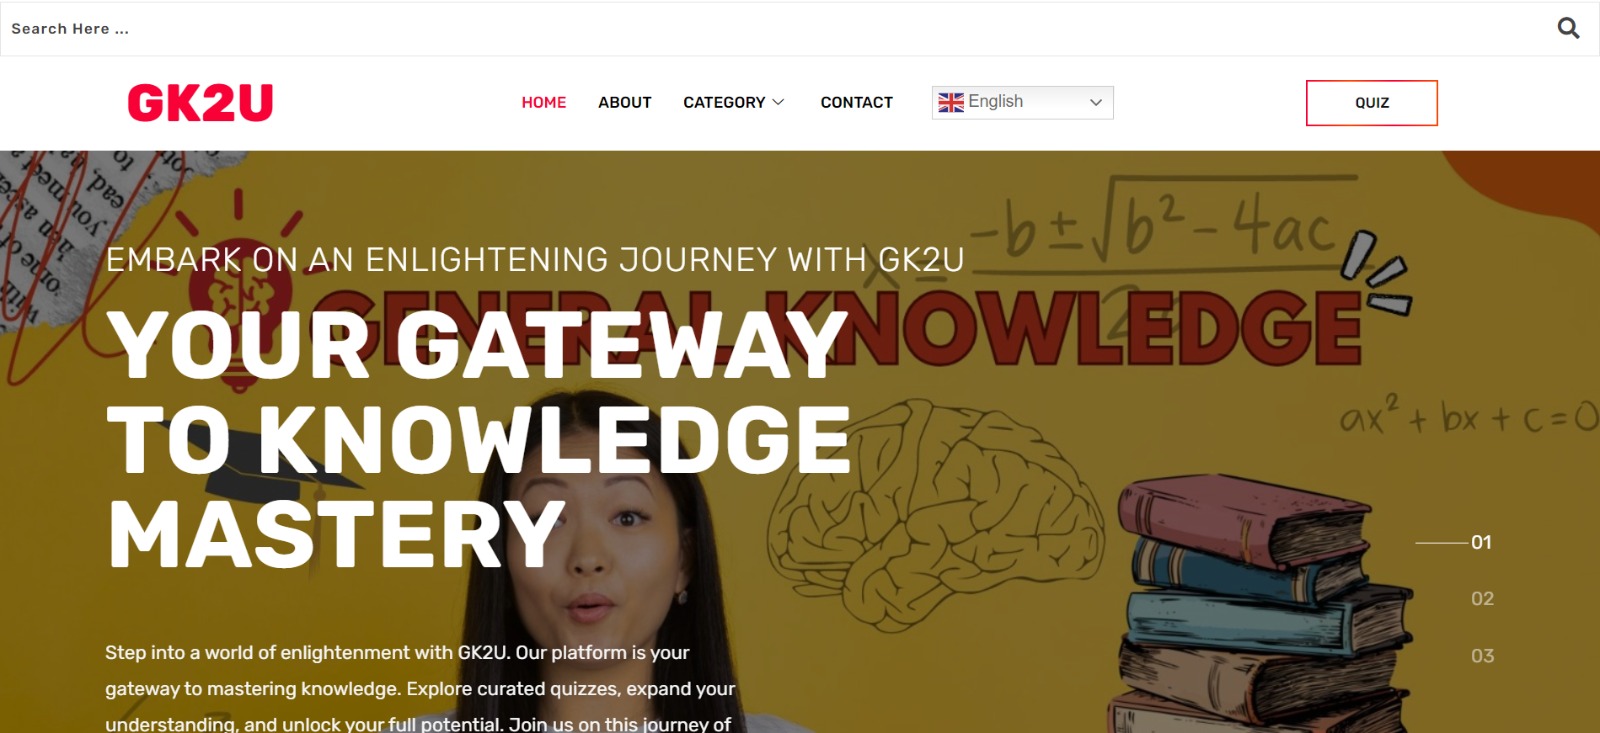 We designed gk2u website